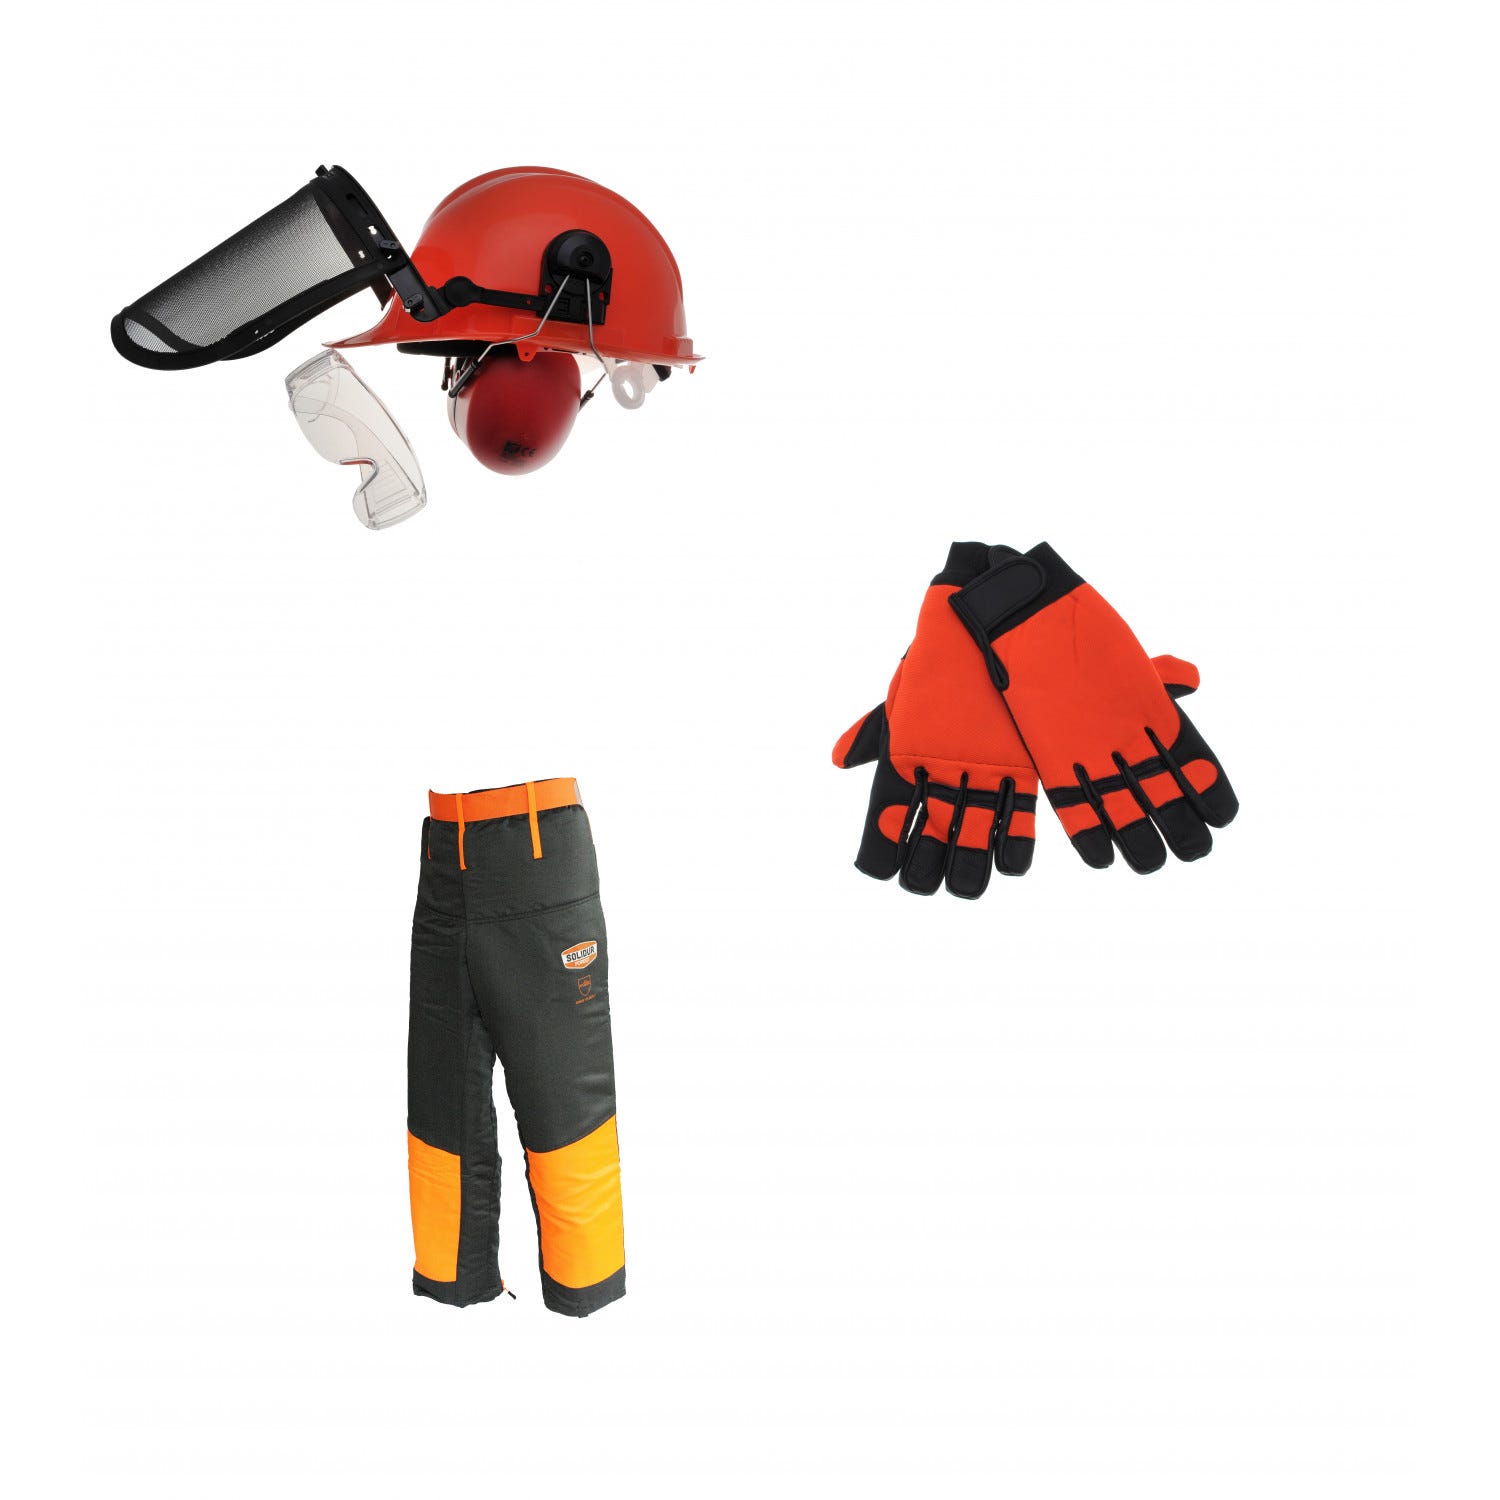 Kit complet équipement de protection pour bûcheron taille gant